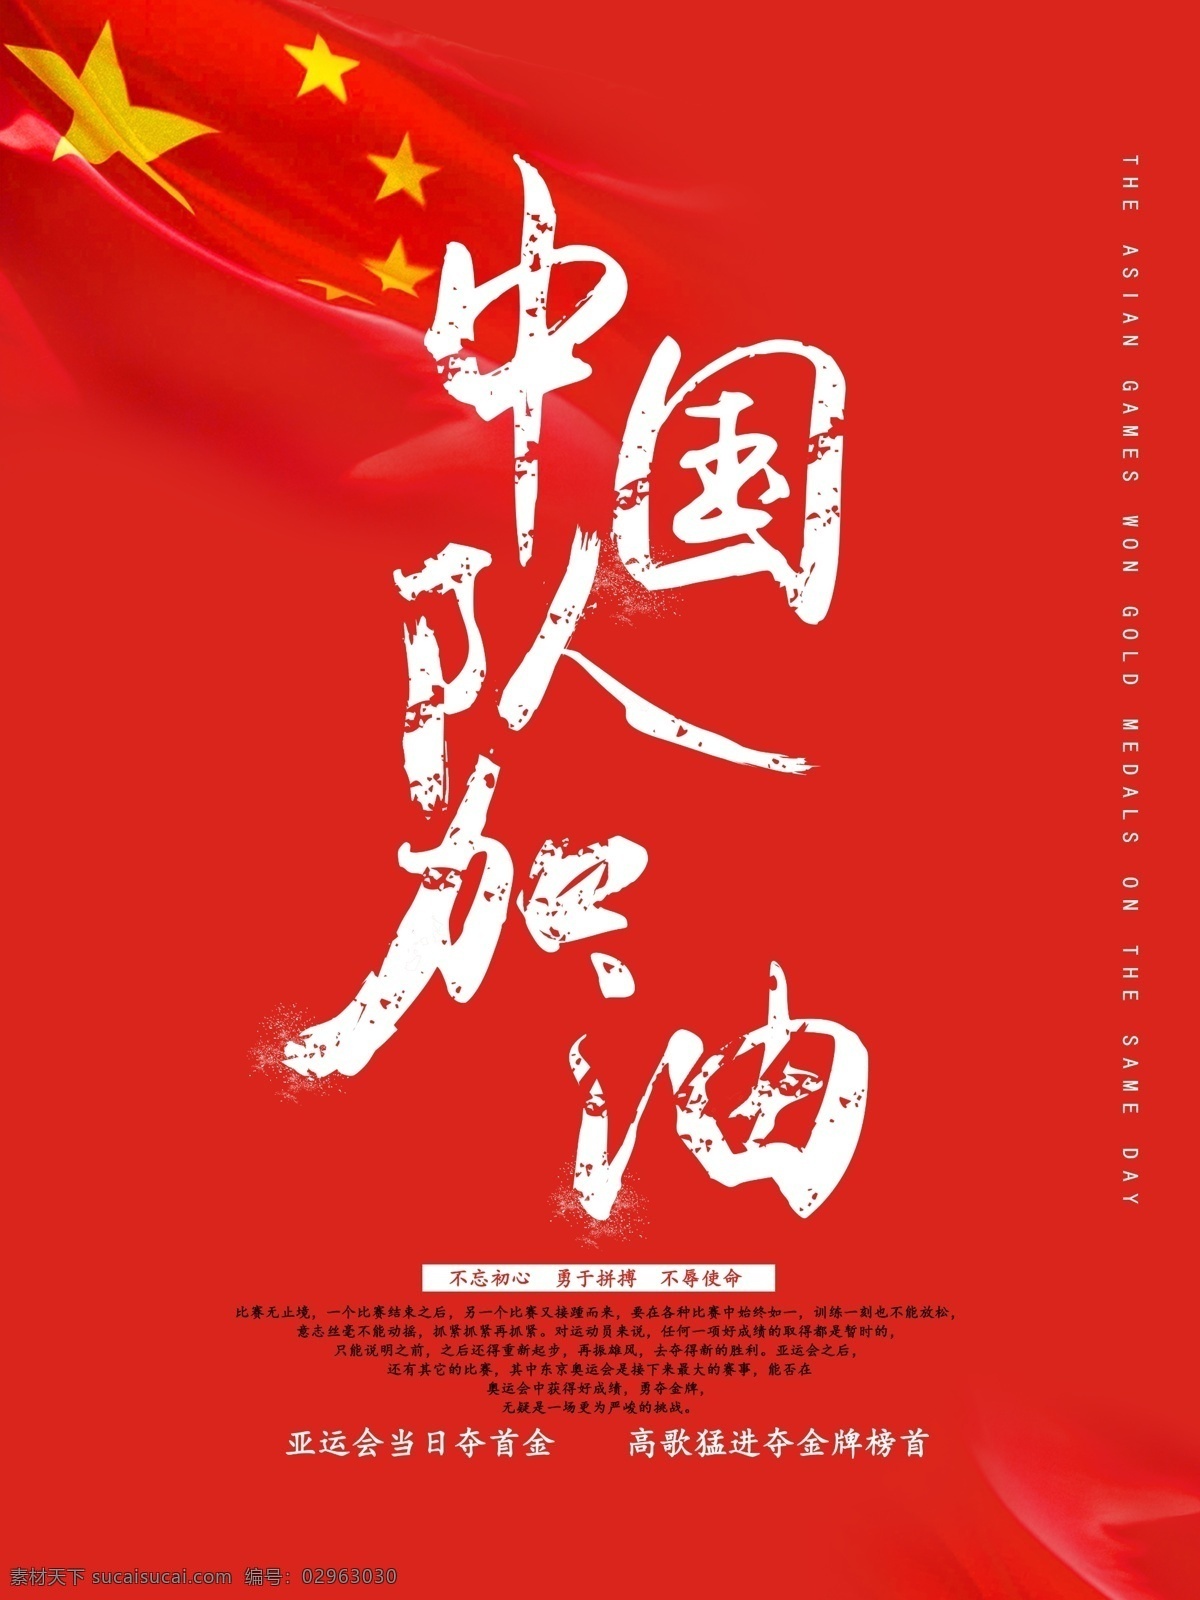 亚运会 中国队 加油 海报 中国加油 体育海报 夺金牌 首金 中国队加油